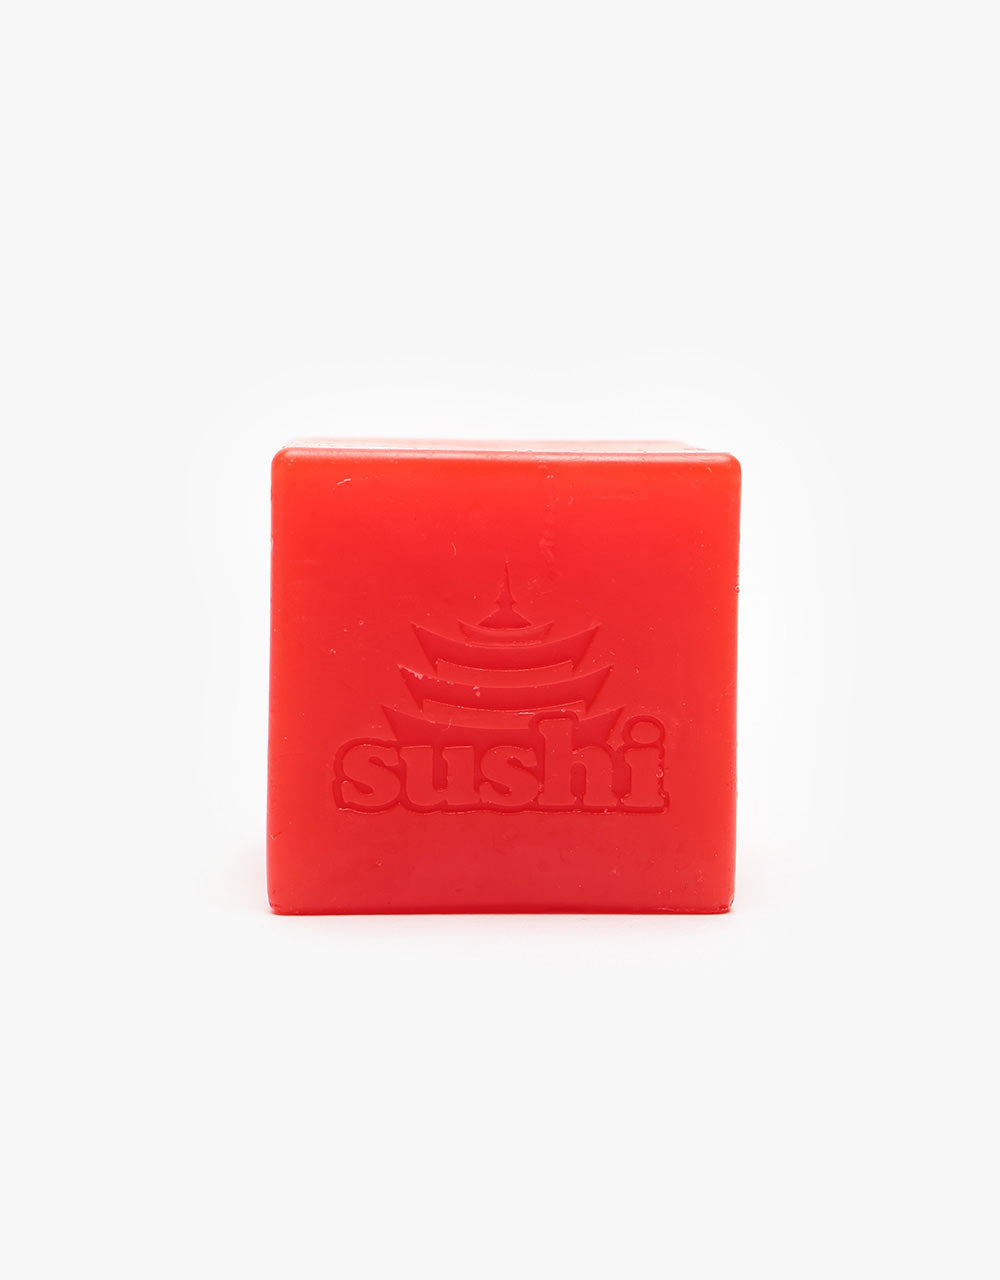 Sushi On/Off Wax Block